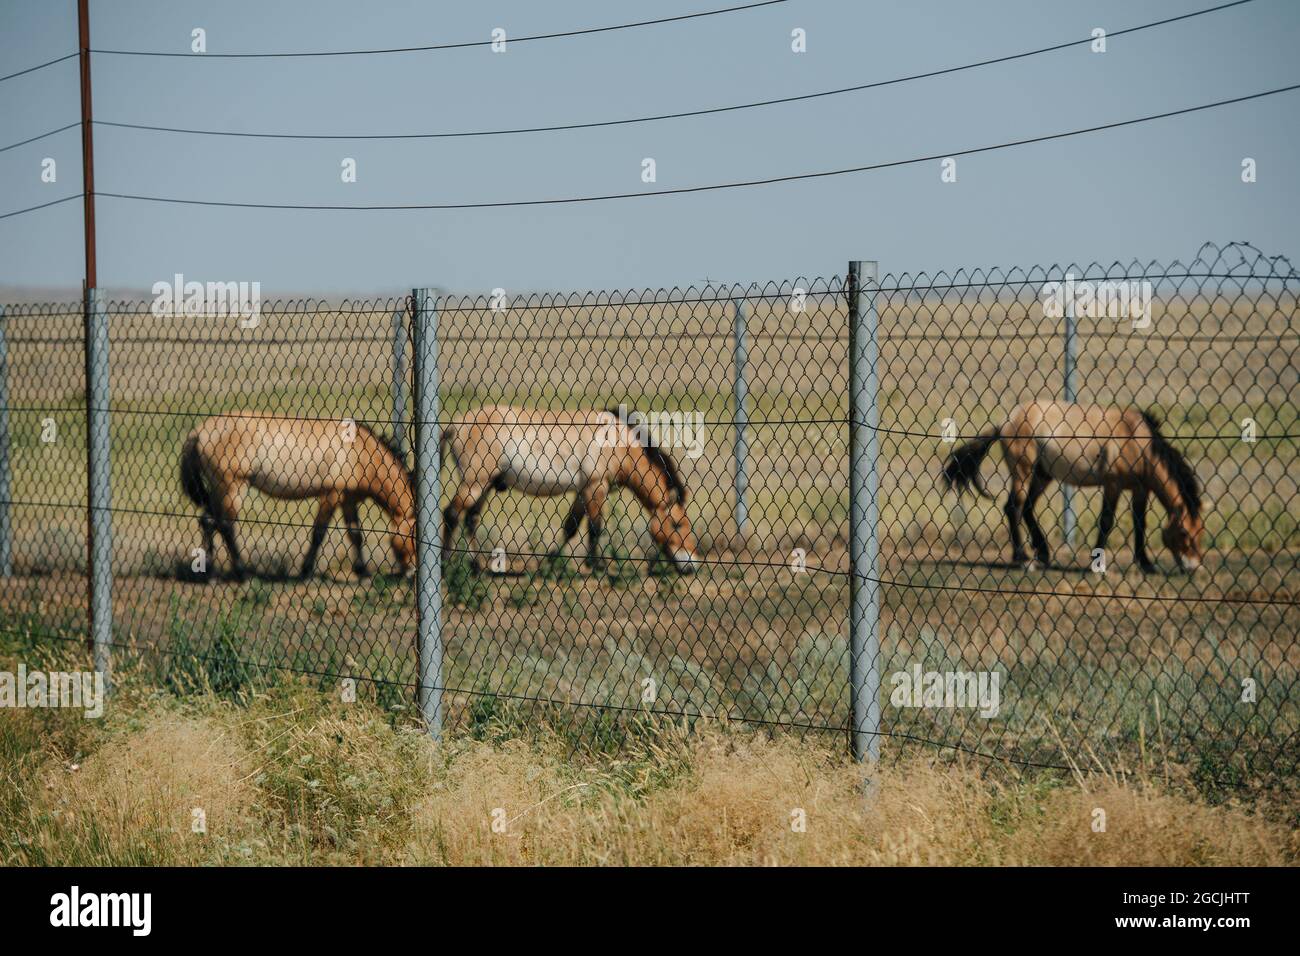 Paddock avec de petits chevaux sauvages de la lignée ancienne non domestiquée pastoring sur une plaine de steppe. Clôture en premier plan. Banque D'Images